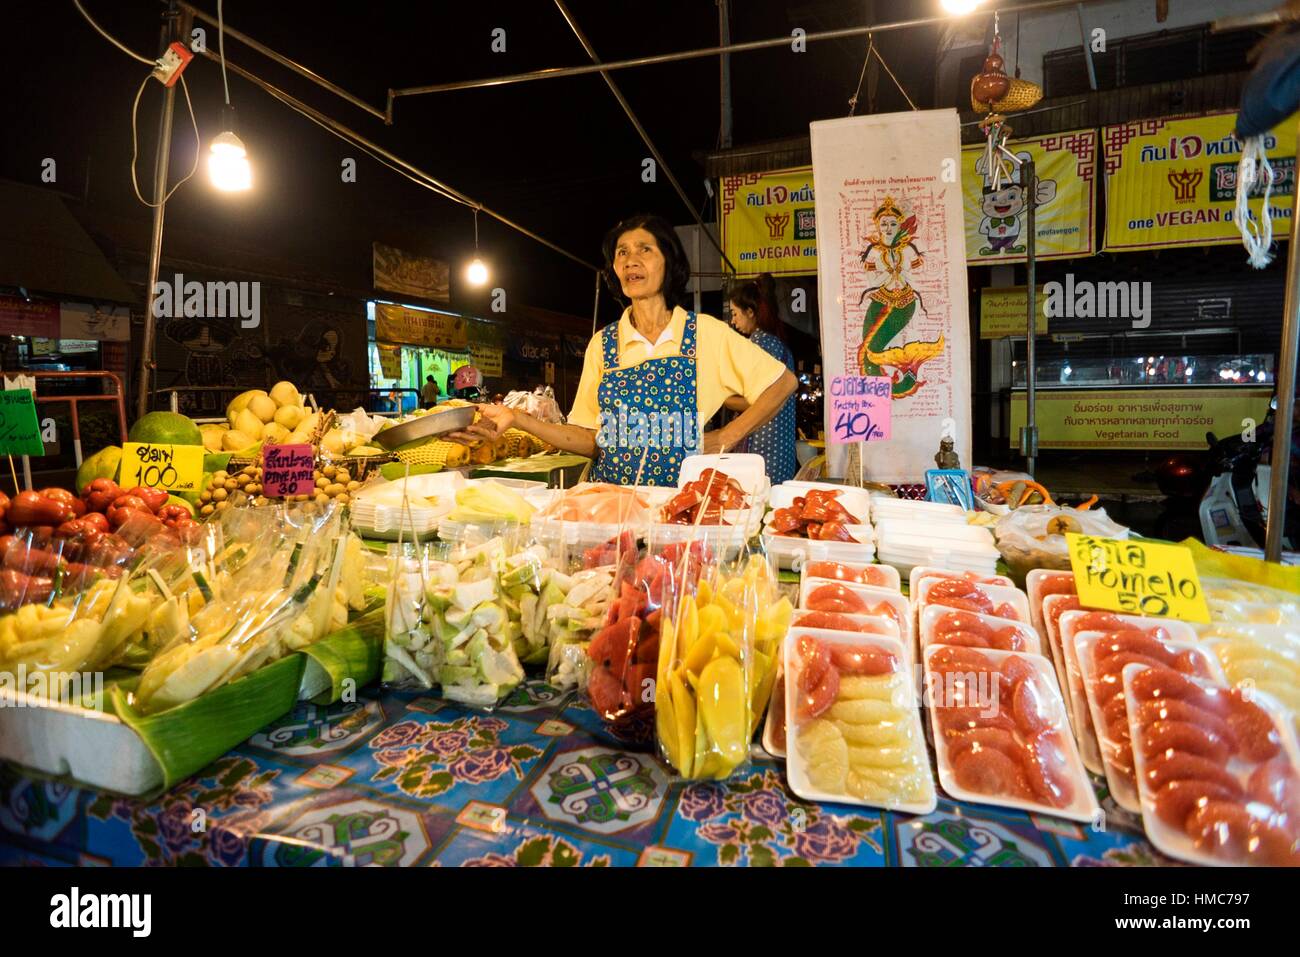 Hua Hin night market, Thailand Stock Photo: 133034867 - Alamy